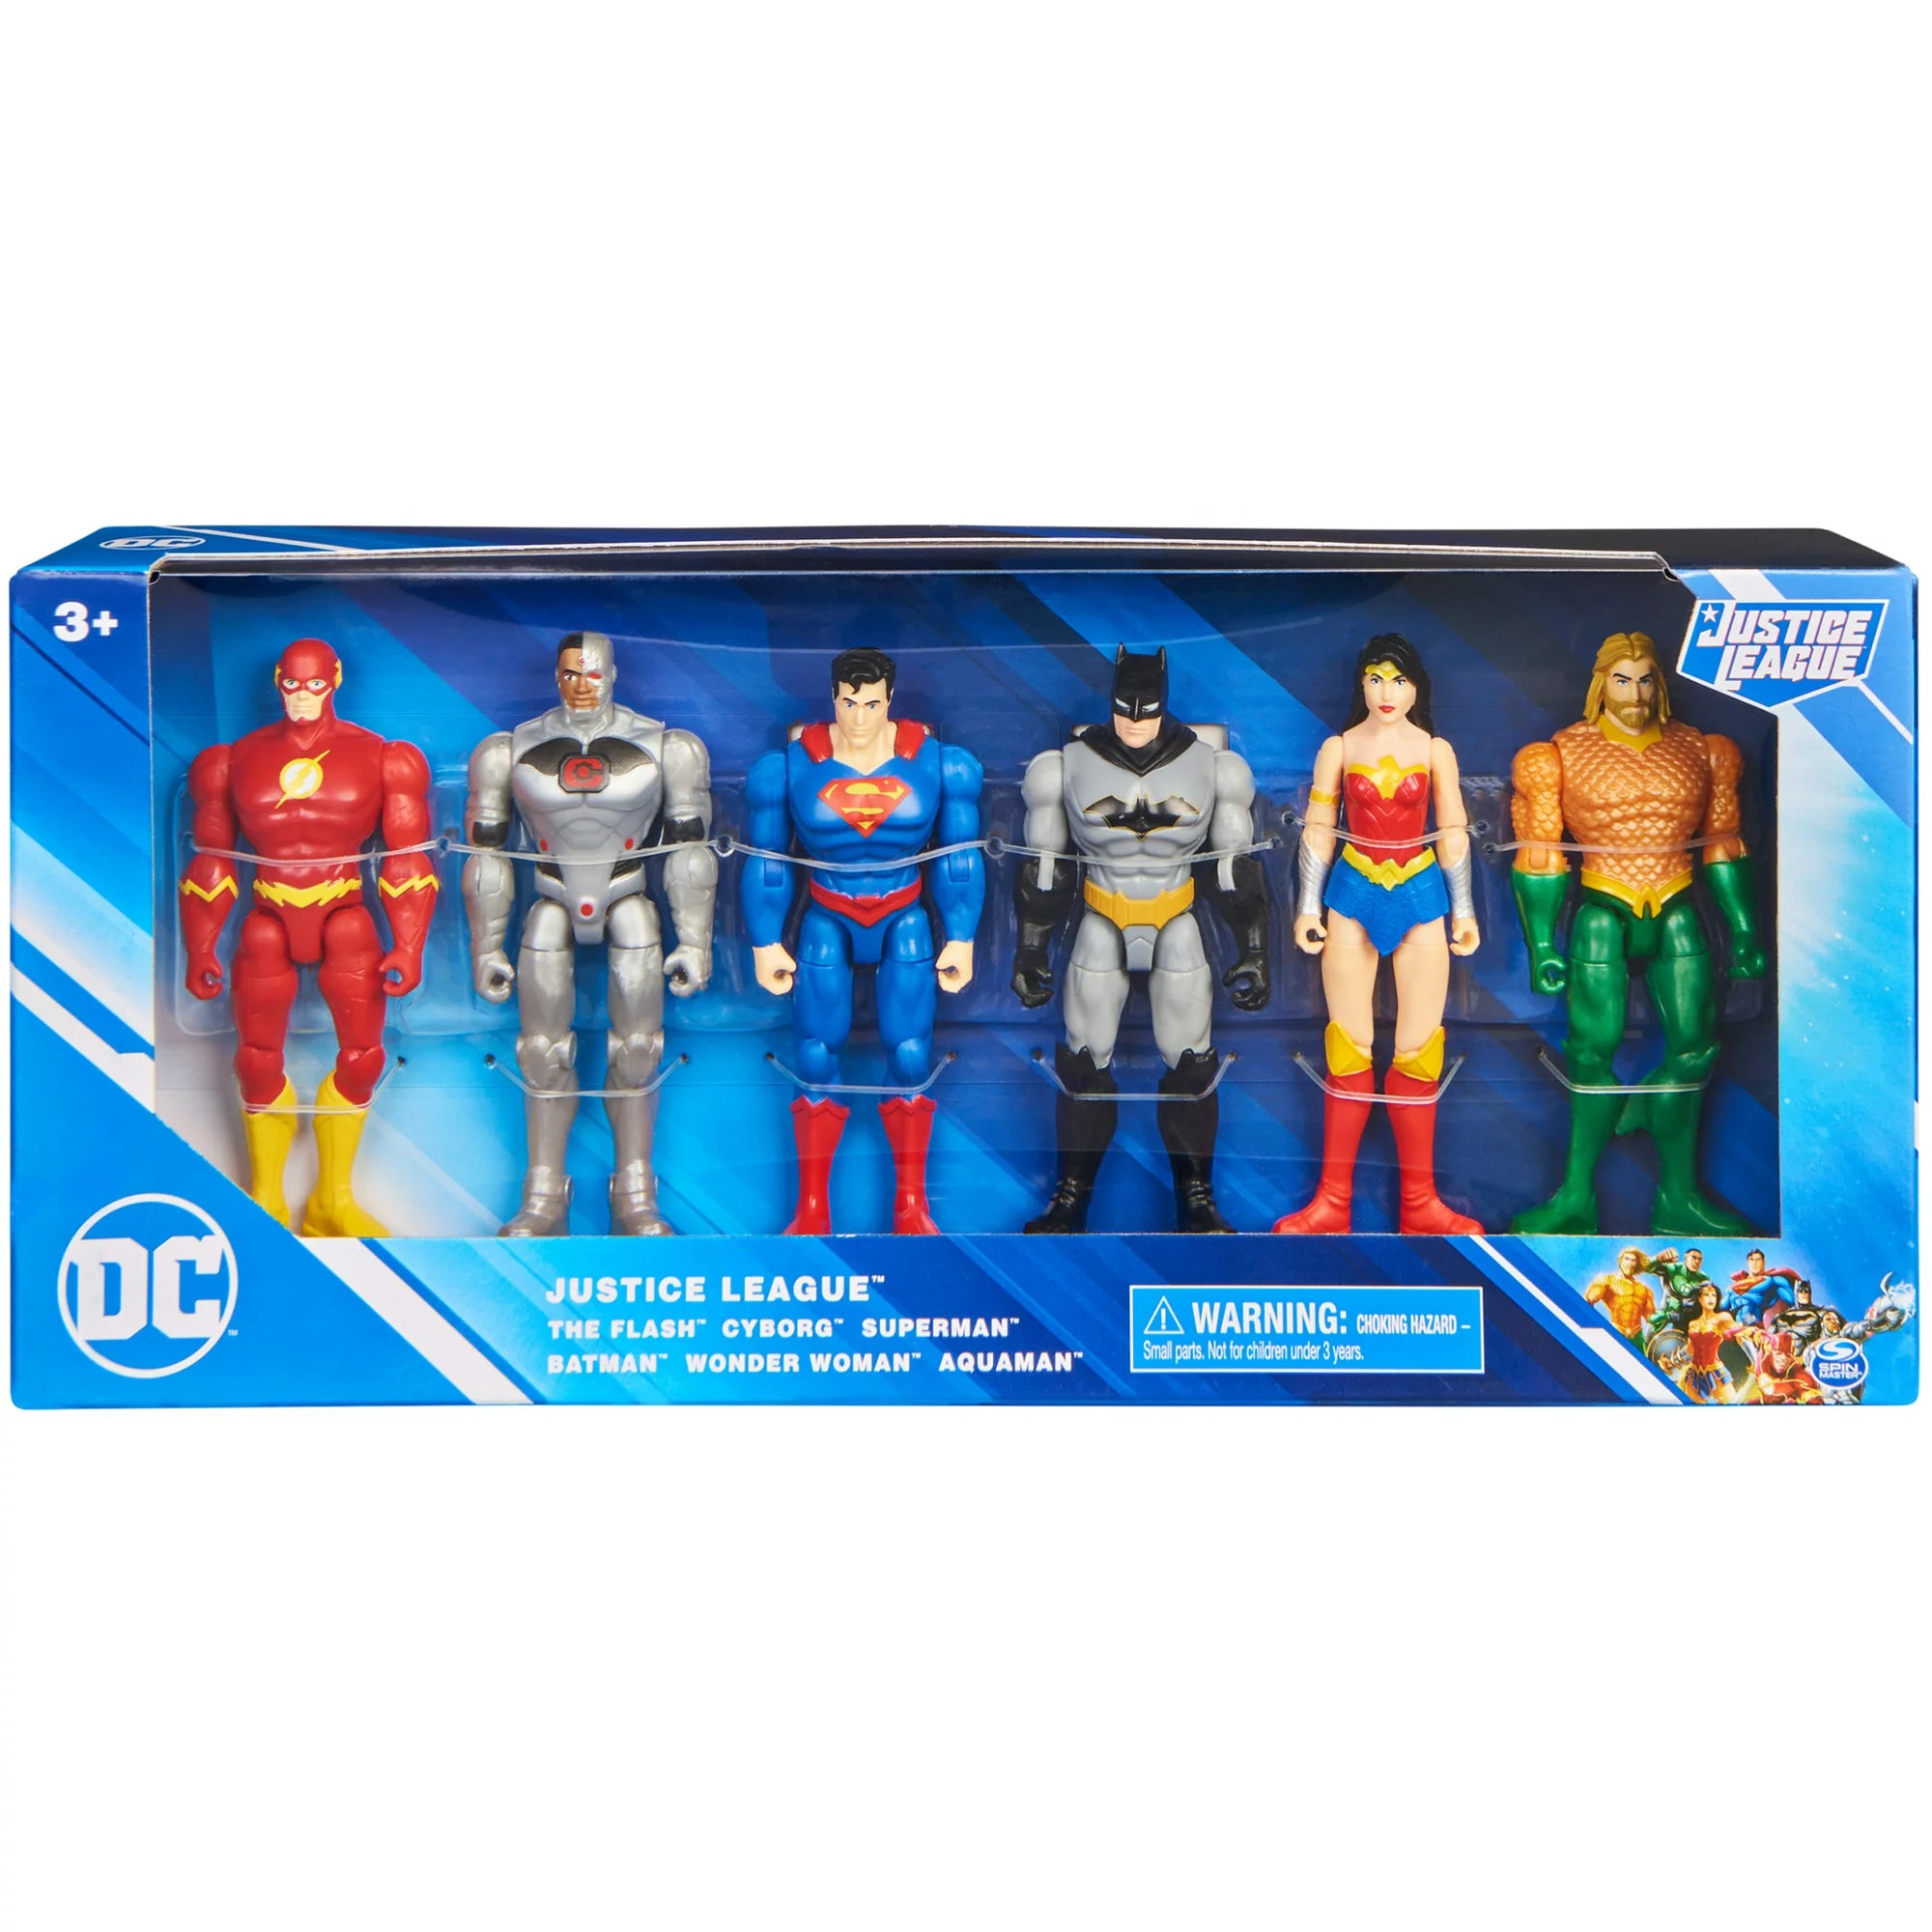 DC Justice League Action Figures - 6 pack